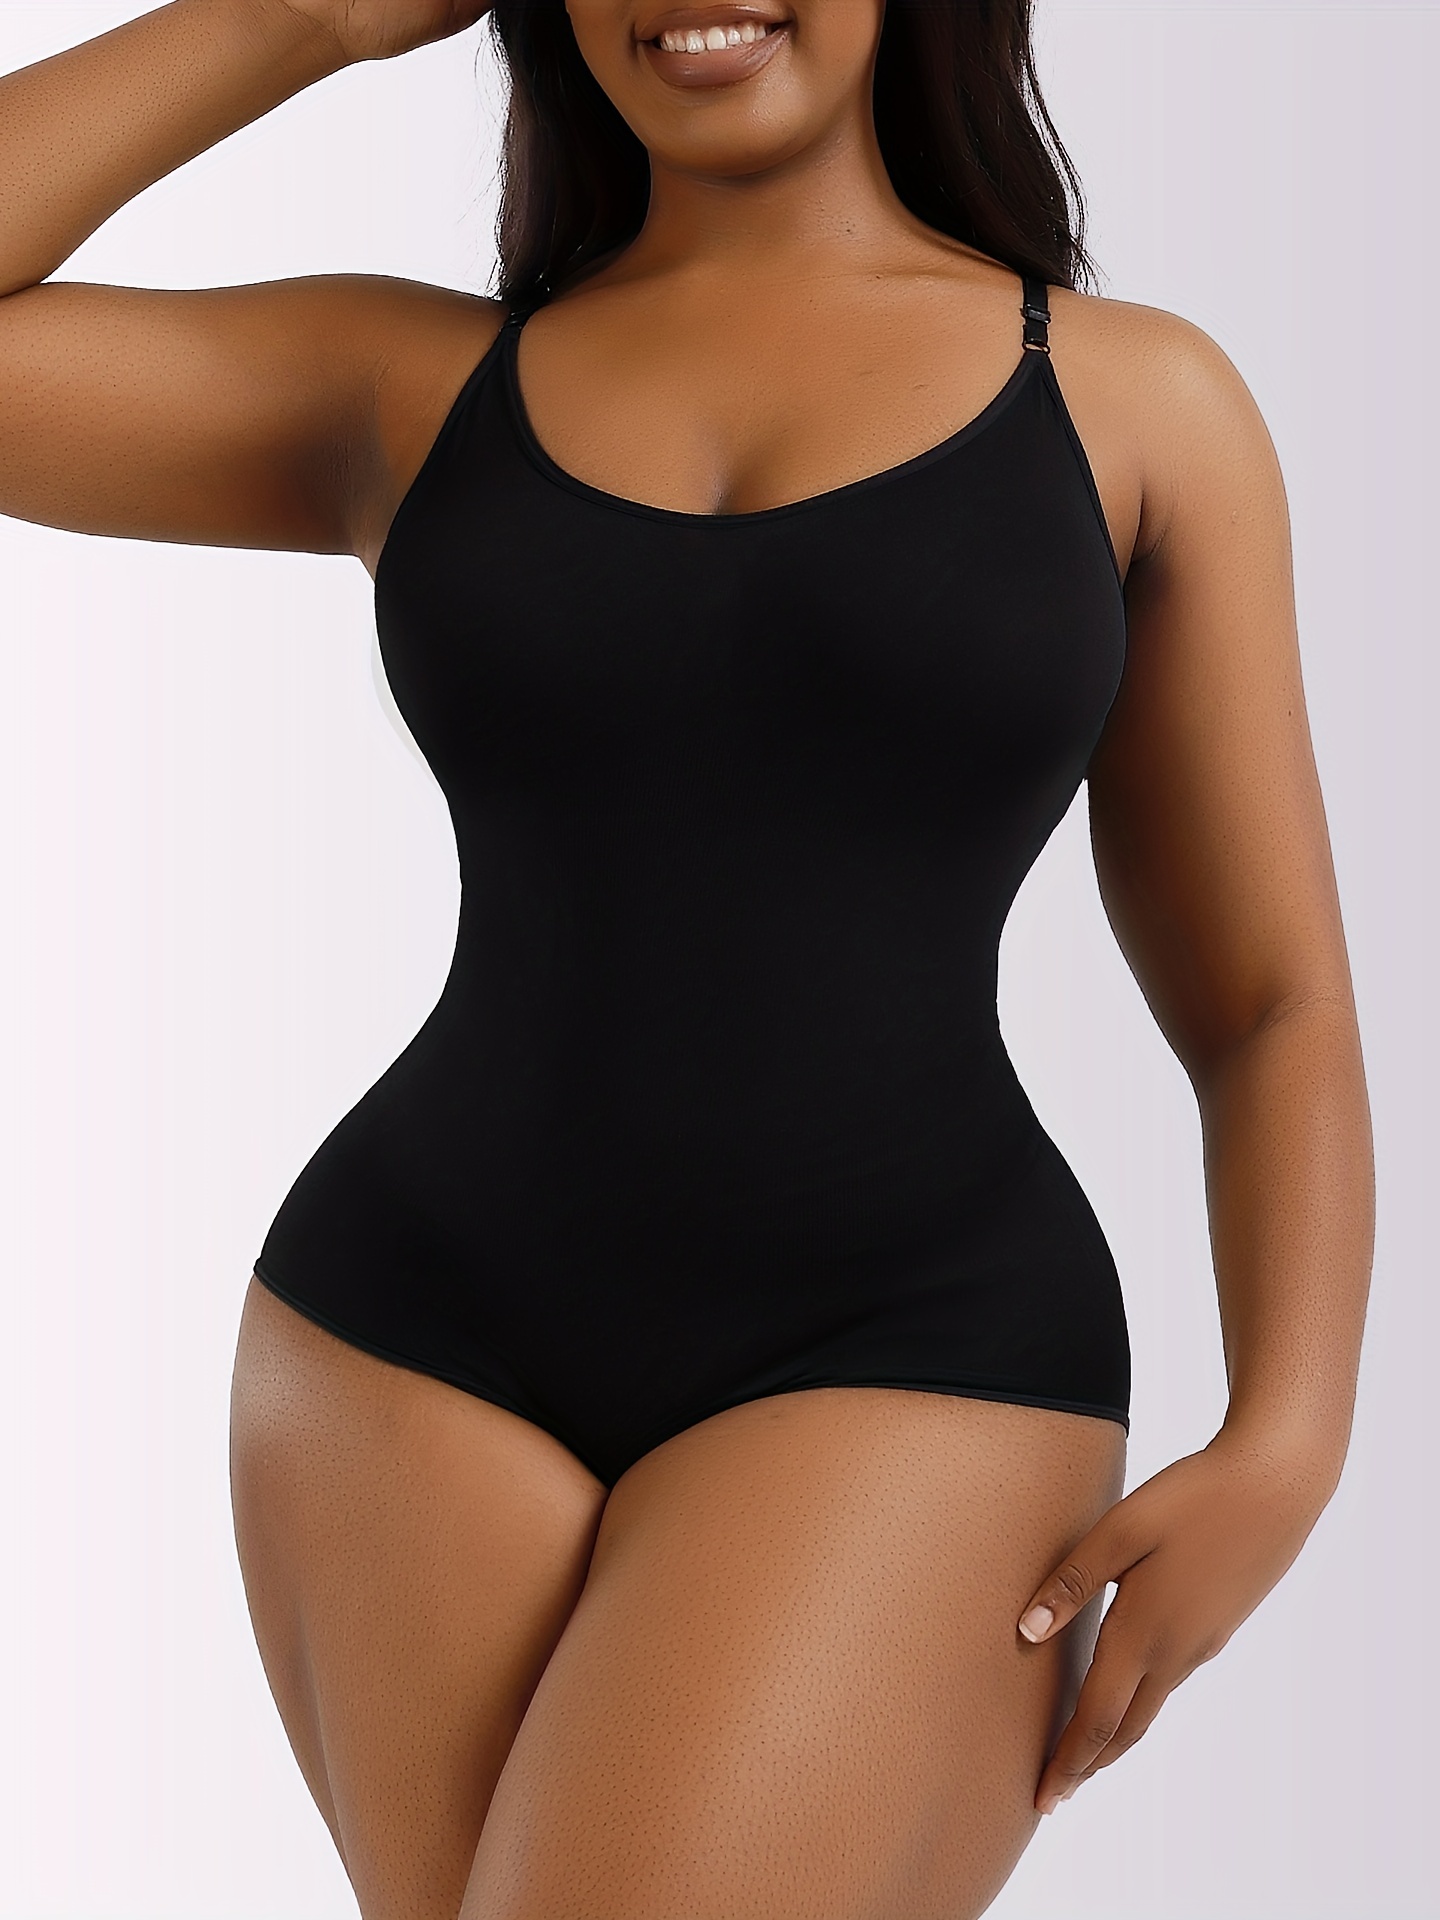 FOCUSSEXY Women Shapewear Bodysuit Seamless Body Shaper Tummy